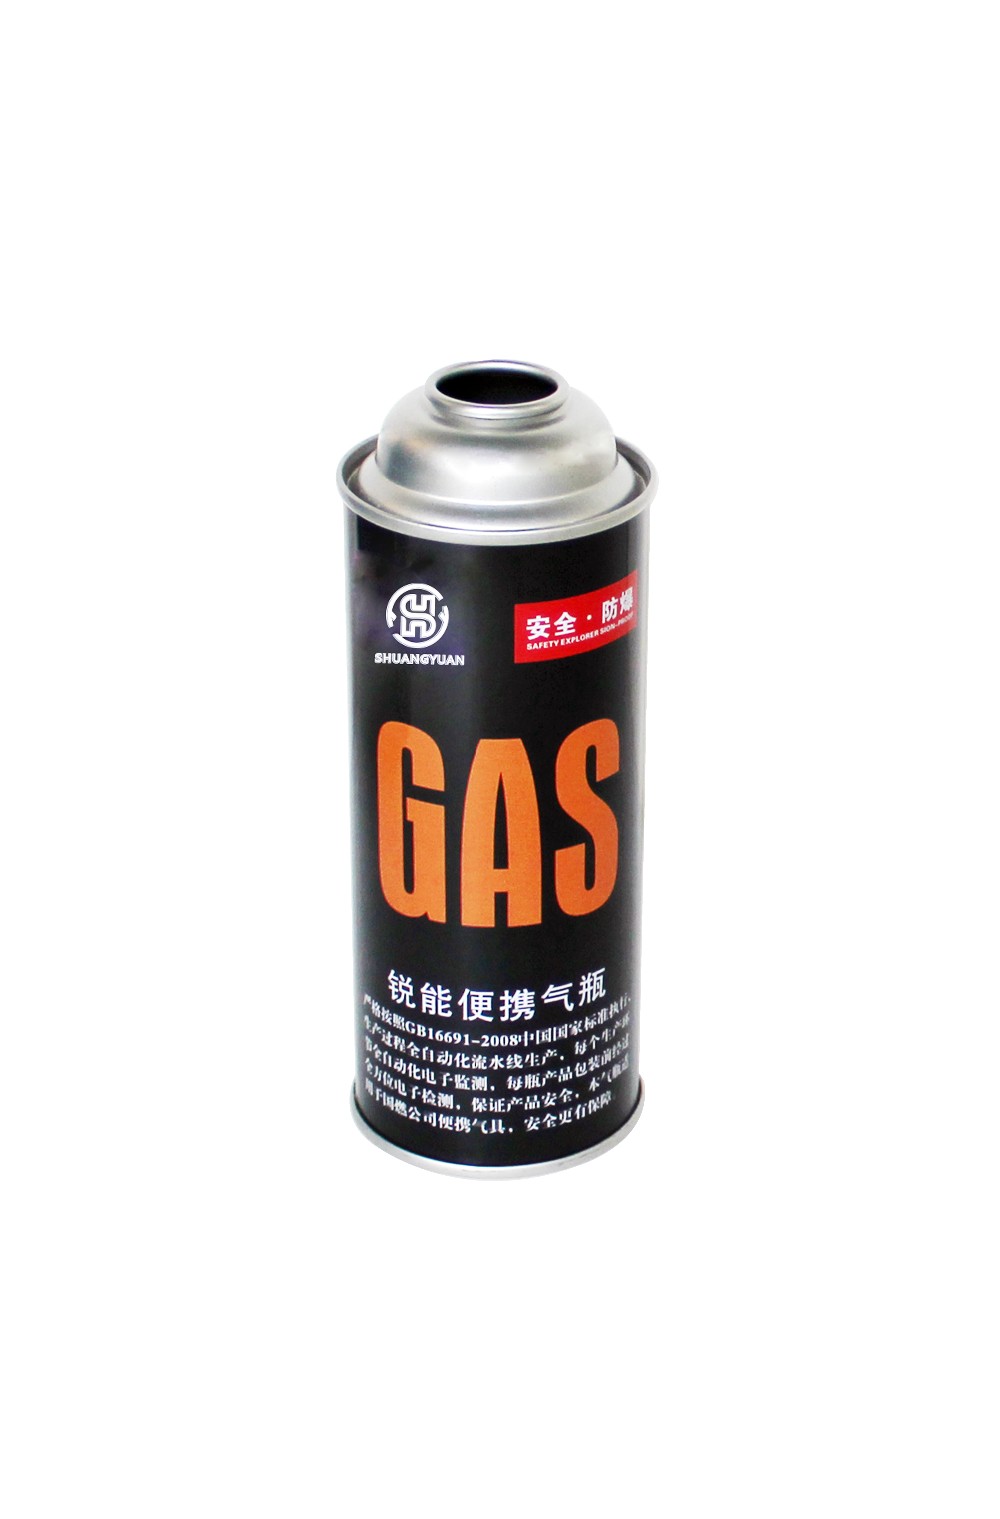 kaleng gas berkemah/kaleng gas cartridge/kaleng gas kompor/kaleng gas cartridge